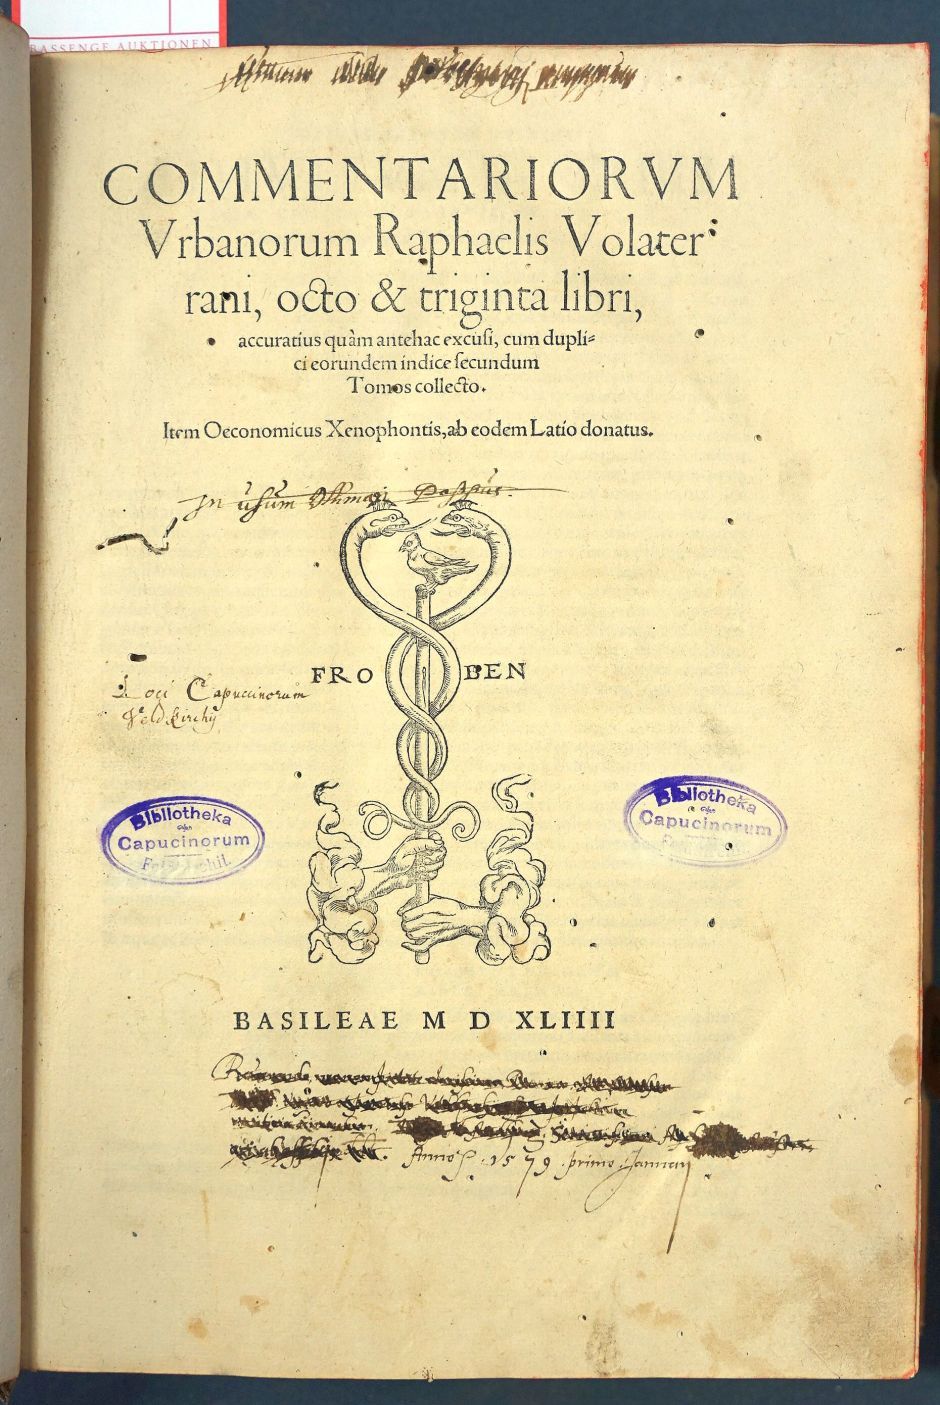 Lot 1147, Auction  115, Maffei, Raffaele, Commentariorum urbanorum Raphaelis Volaterrani